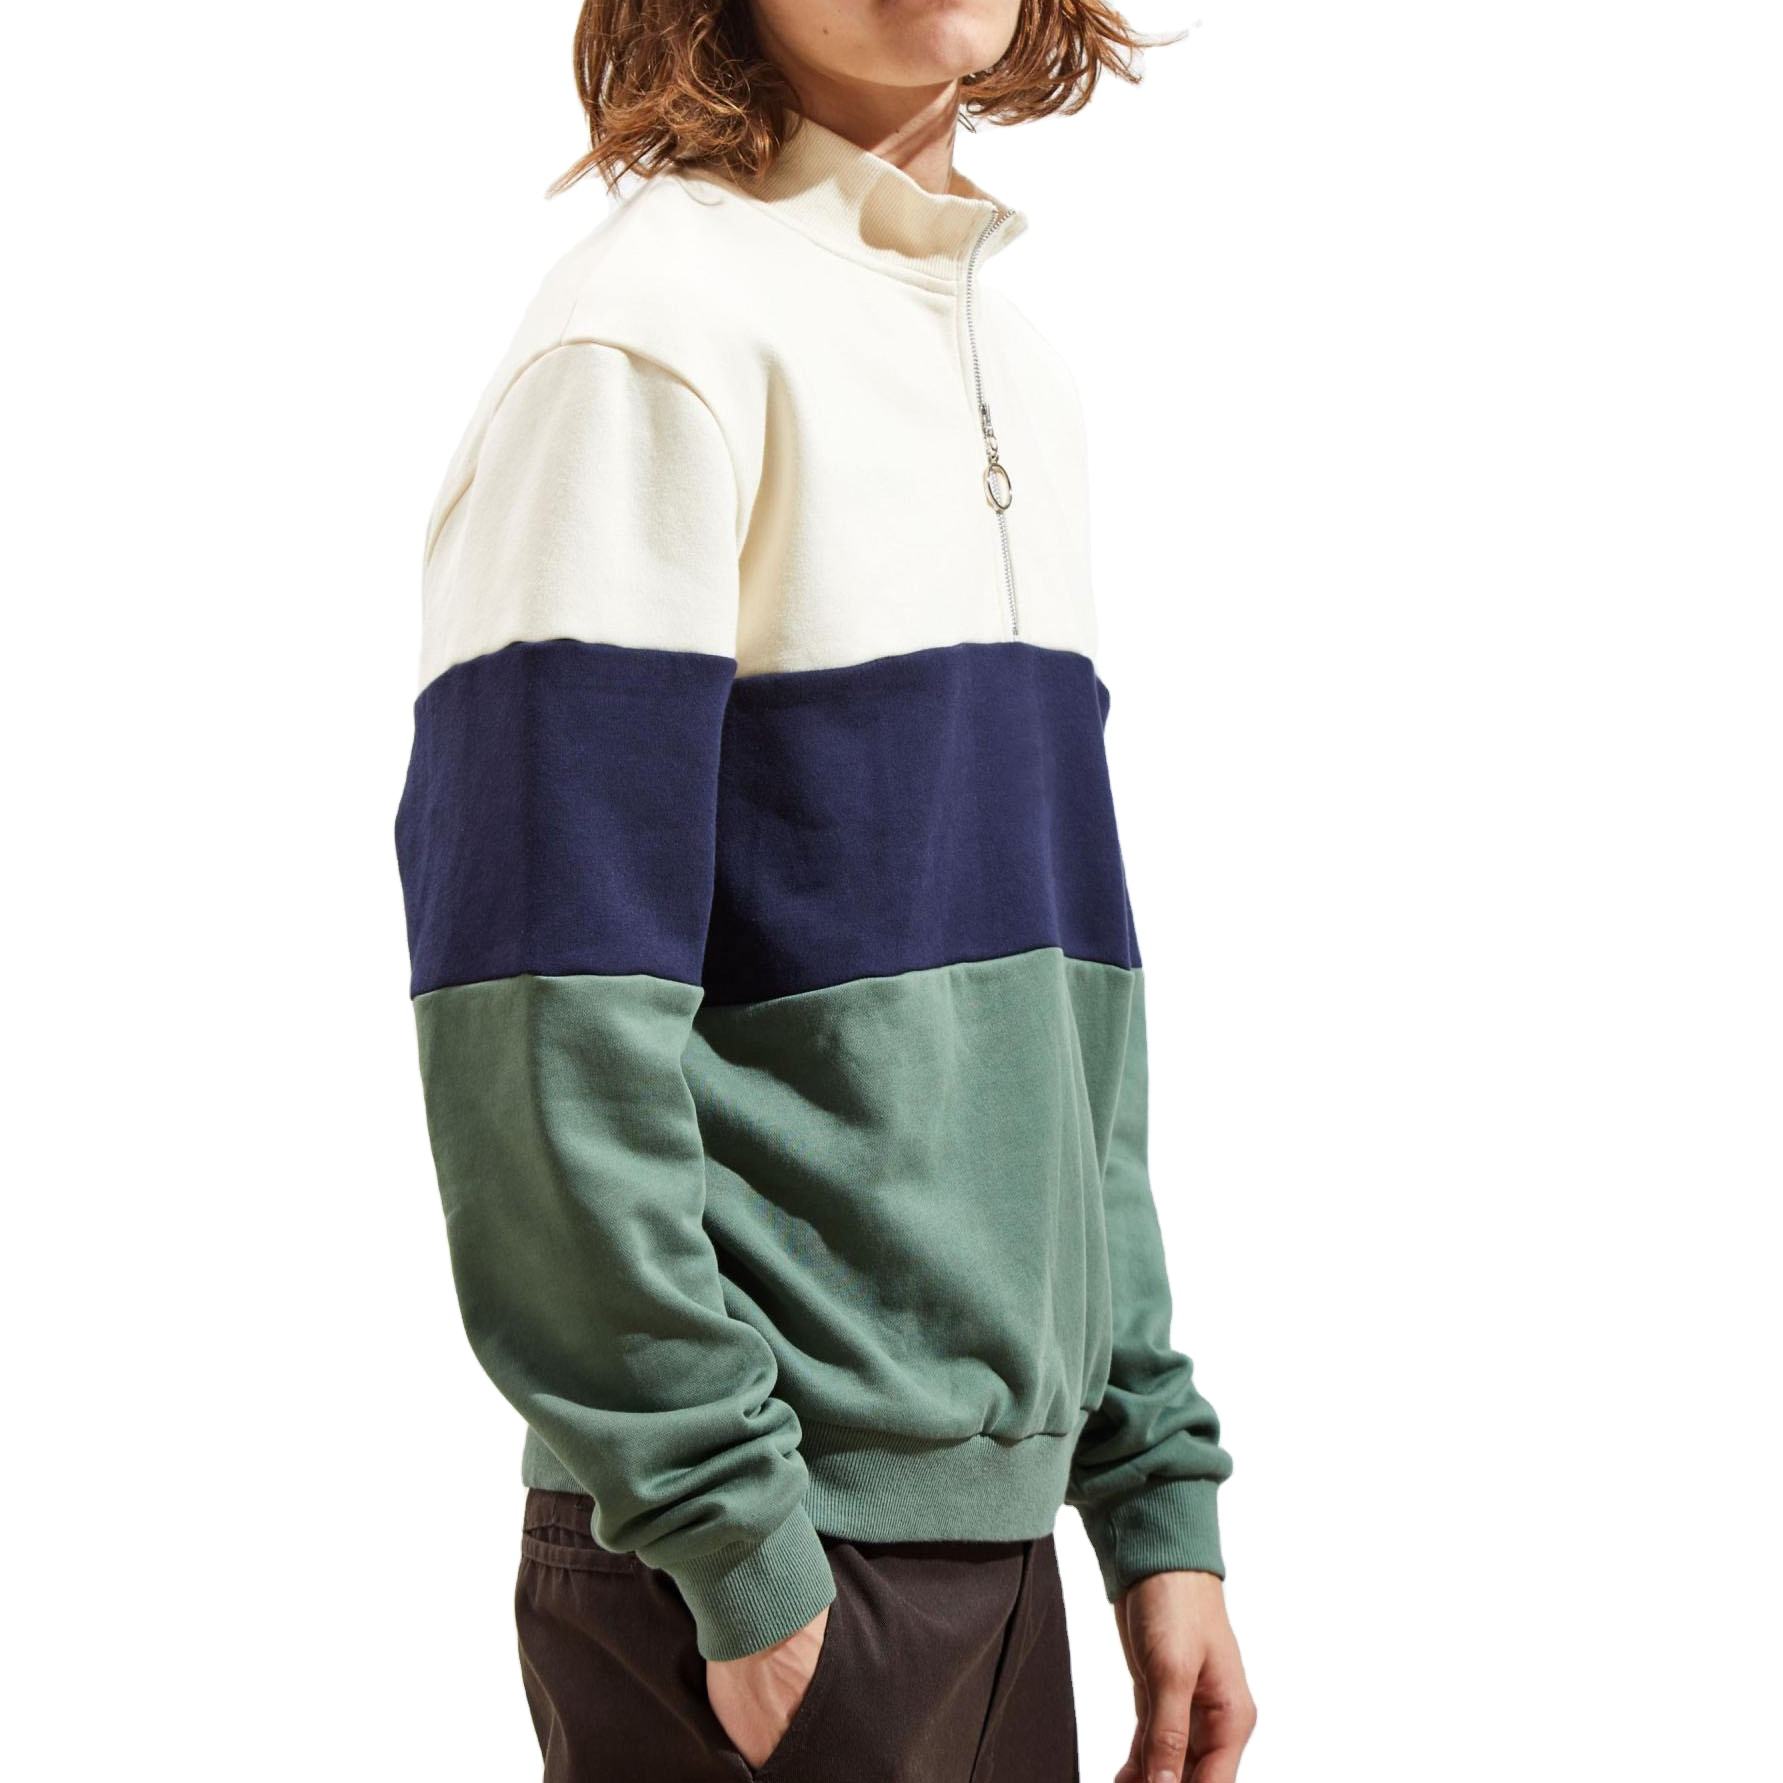 사용자 정의 도매 streetwear 남자 풀오버 양털 colorblock 스트라이핑 하프 지퍼 후드 티 셔츠